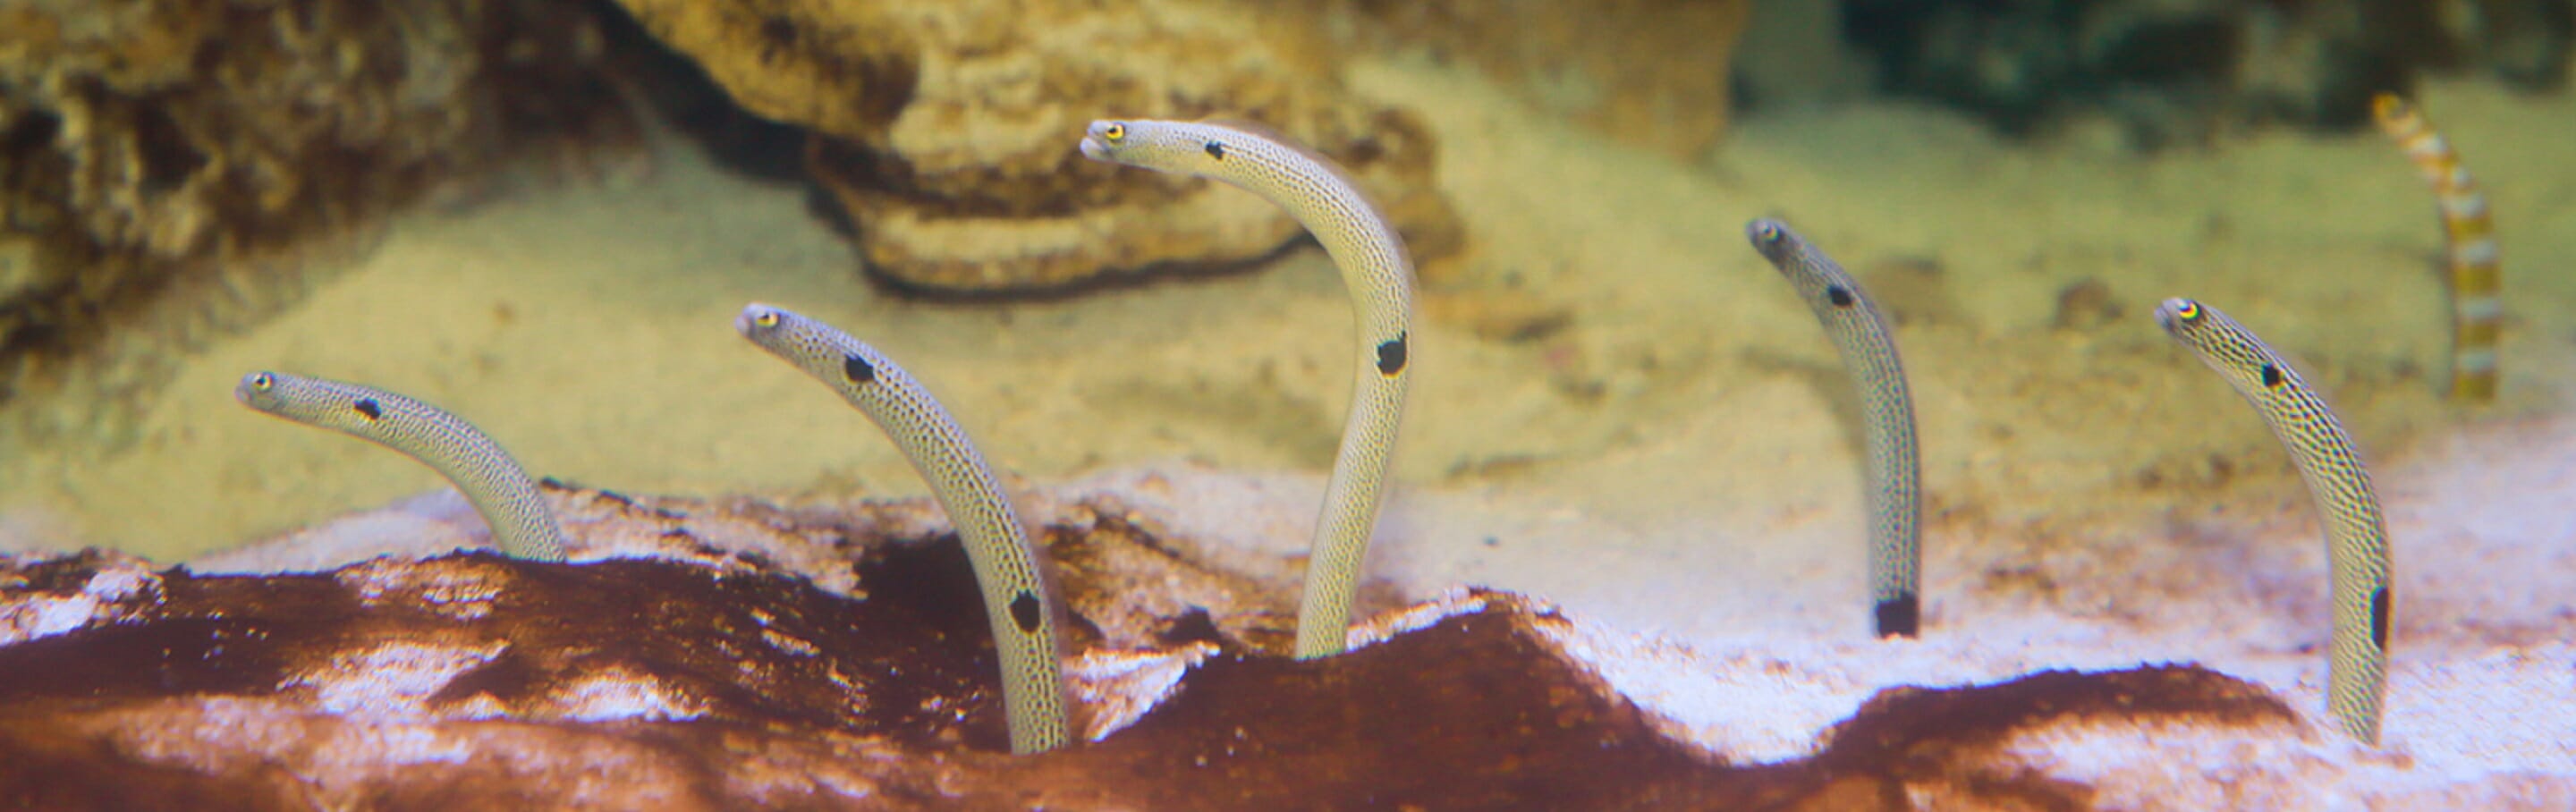 spotted-garden-eel